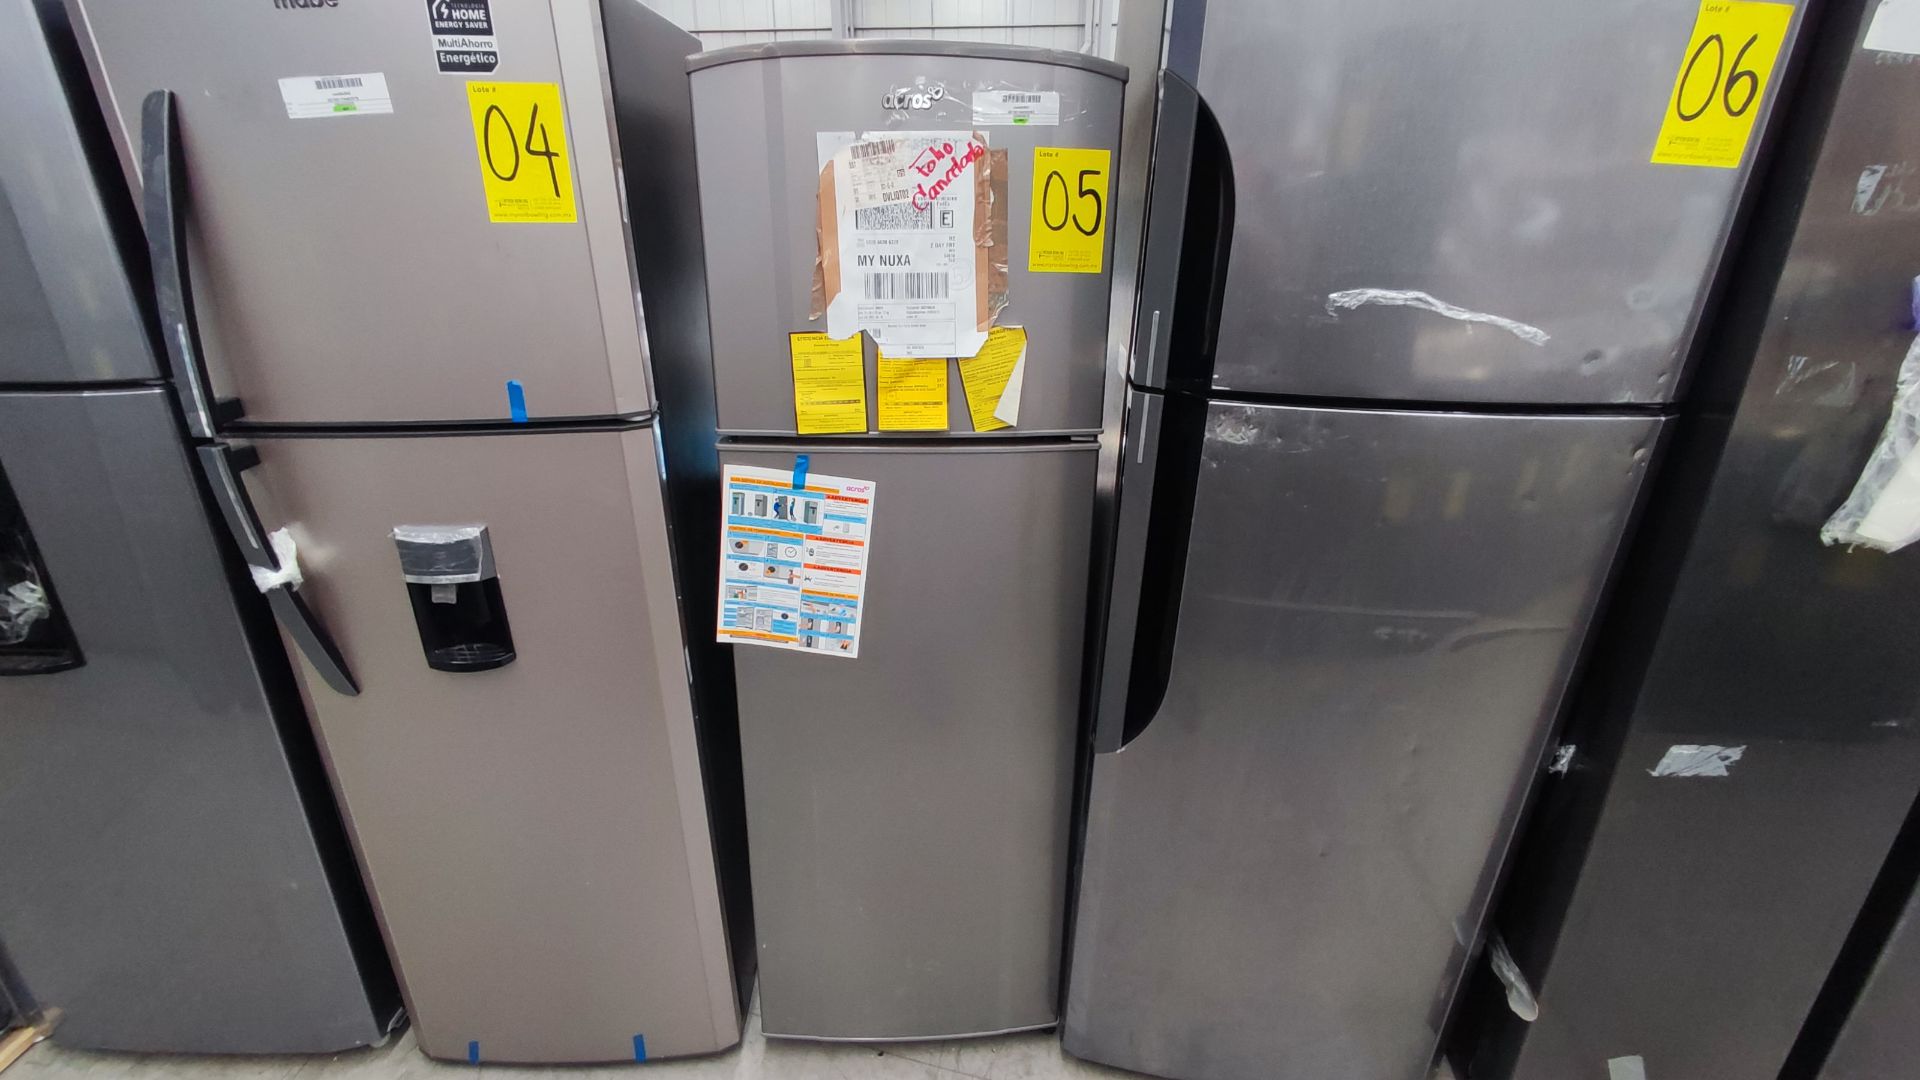 1 Refrigerador Marca Whirlpool, Modelo AT9007G03, Serie 1333816, Color Gris Detalles Estéticos. Fav - Image 11 of 12